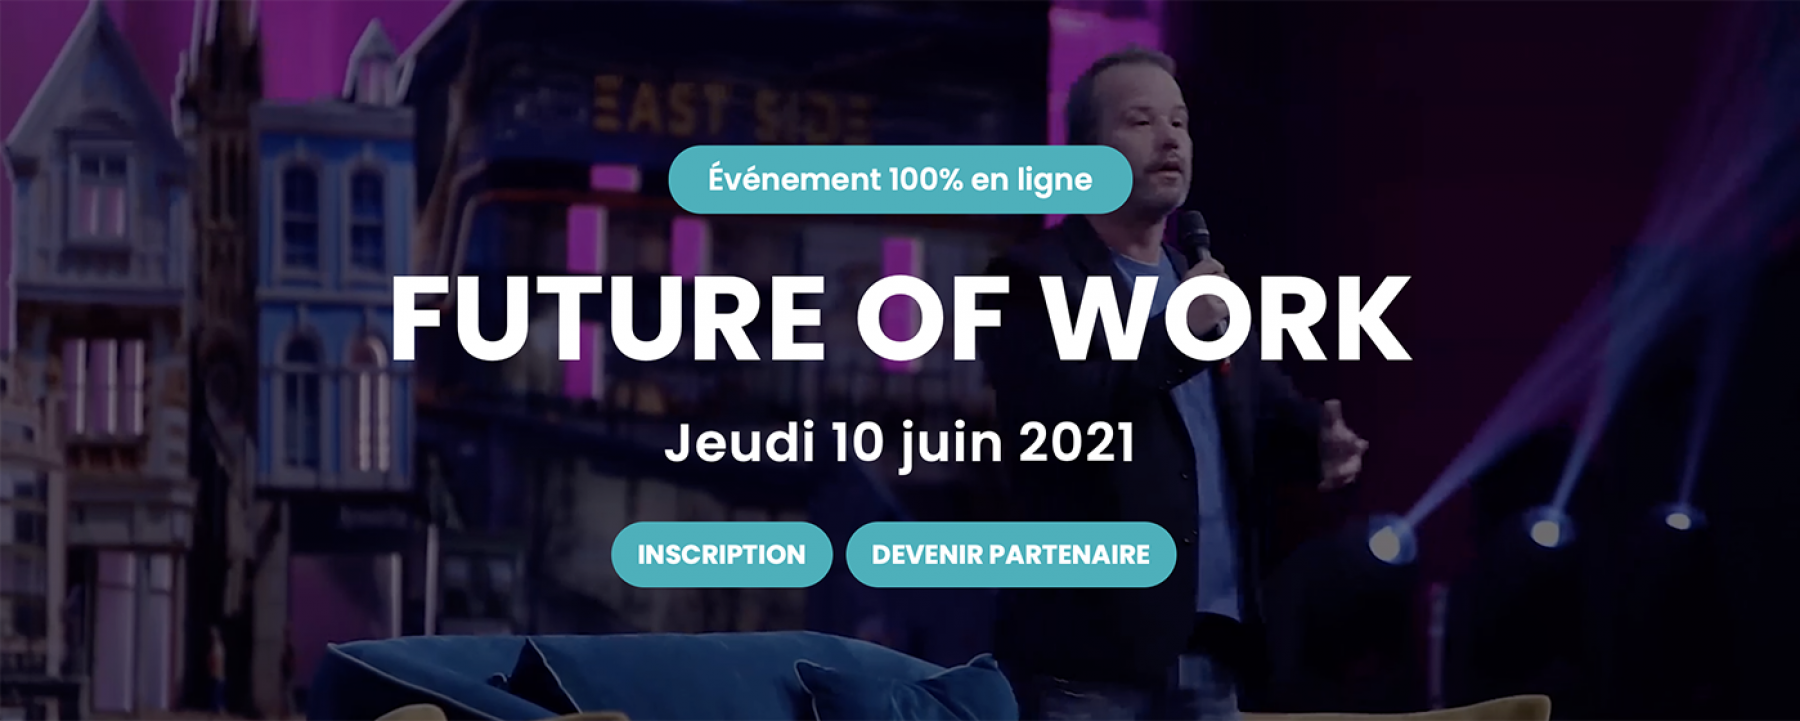 HUBDAY Future of Work 2021, événement organisé par le Hub Institute le 10 juin 2021